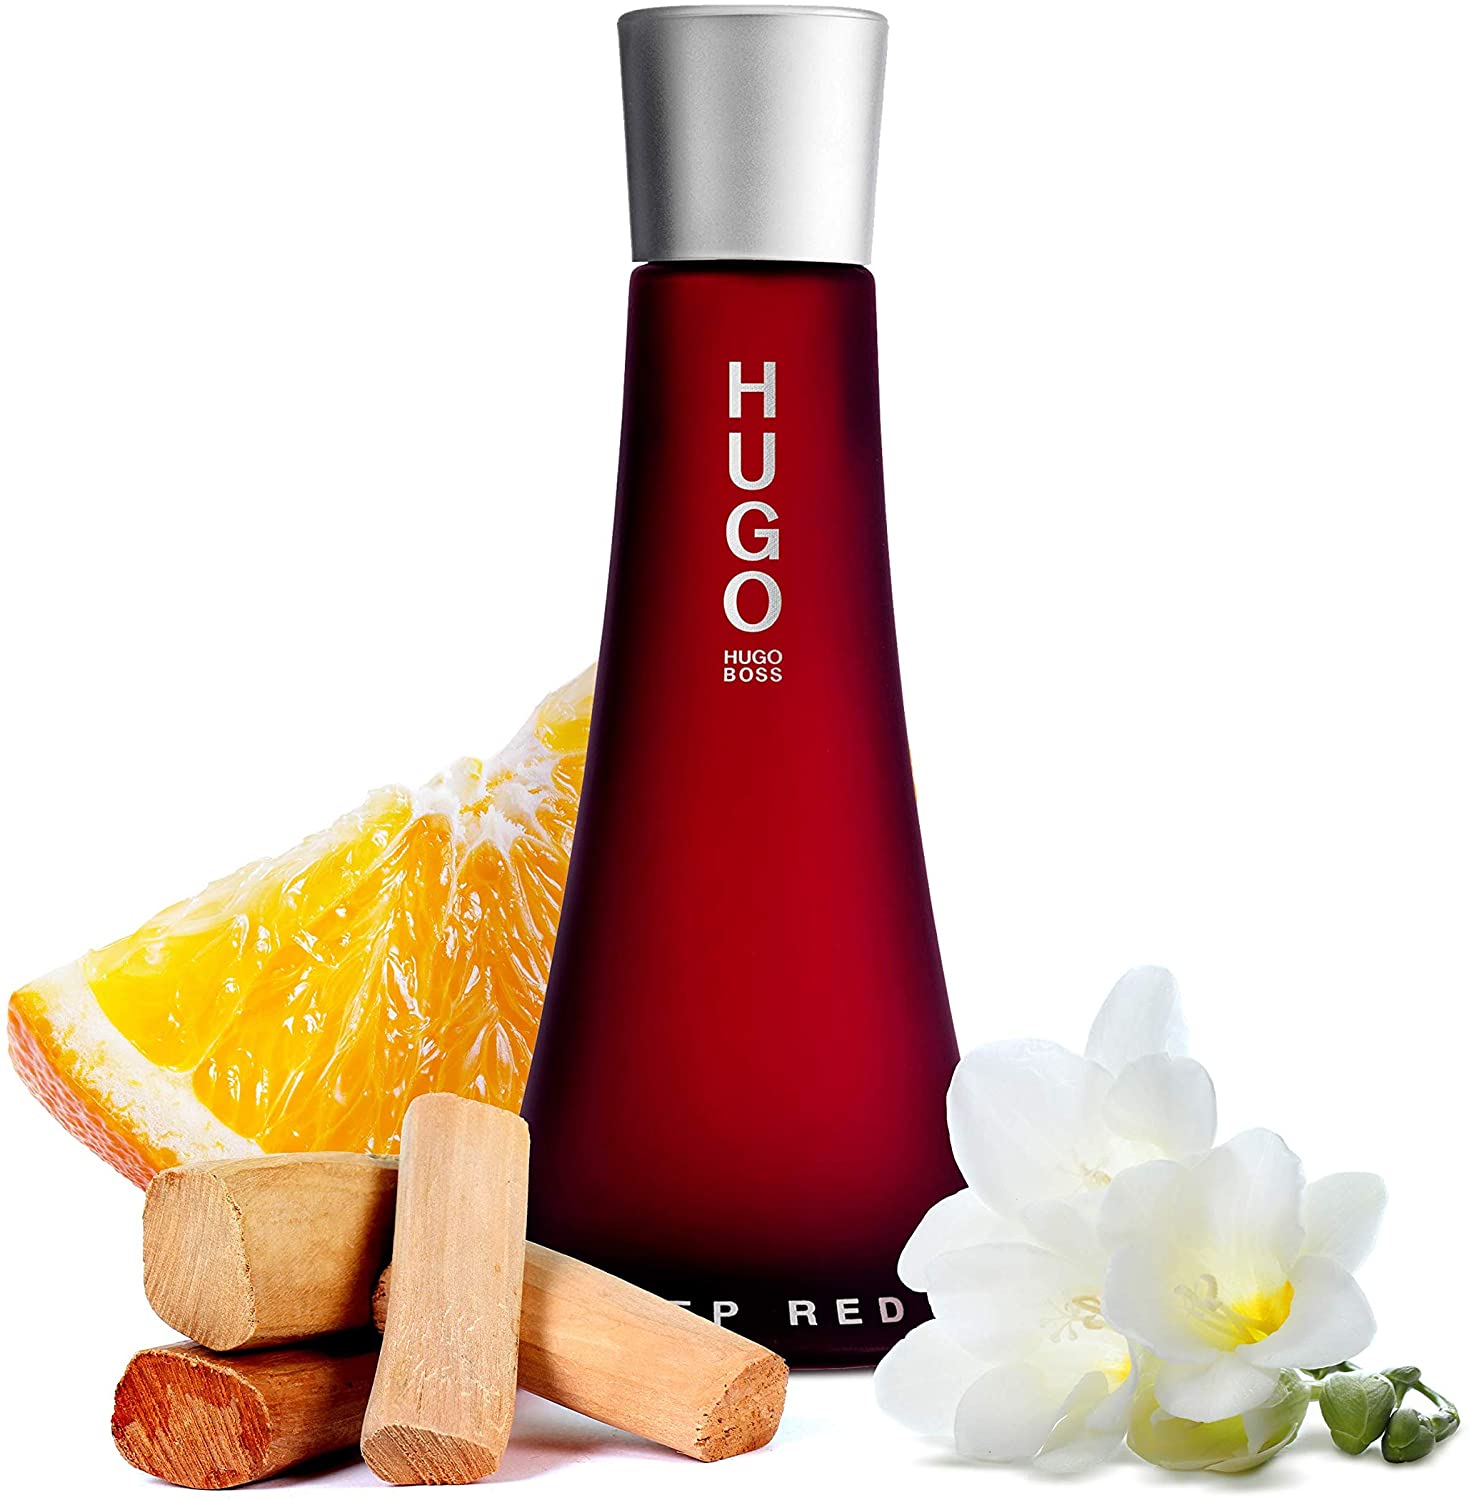 De - 90 Price Qonooz Online UAE Boss Eau for in Hugo ml Deep Buy Parfum Women, at - Red Best